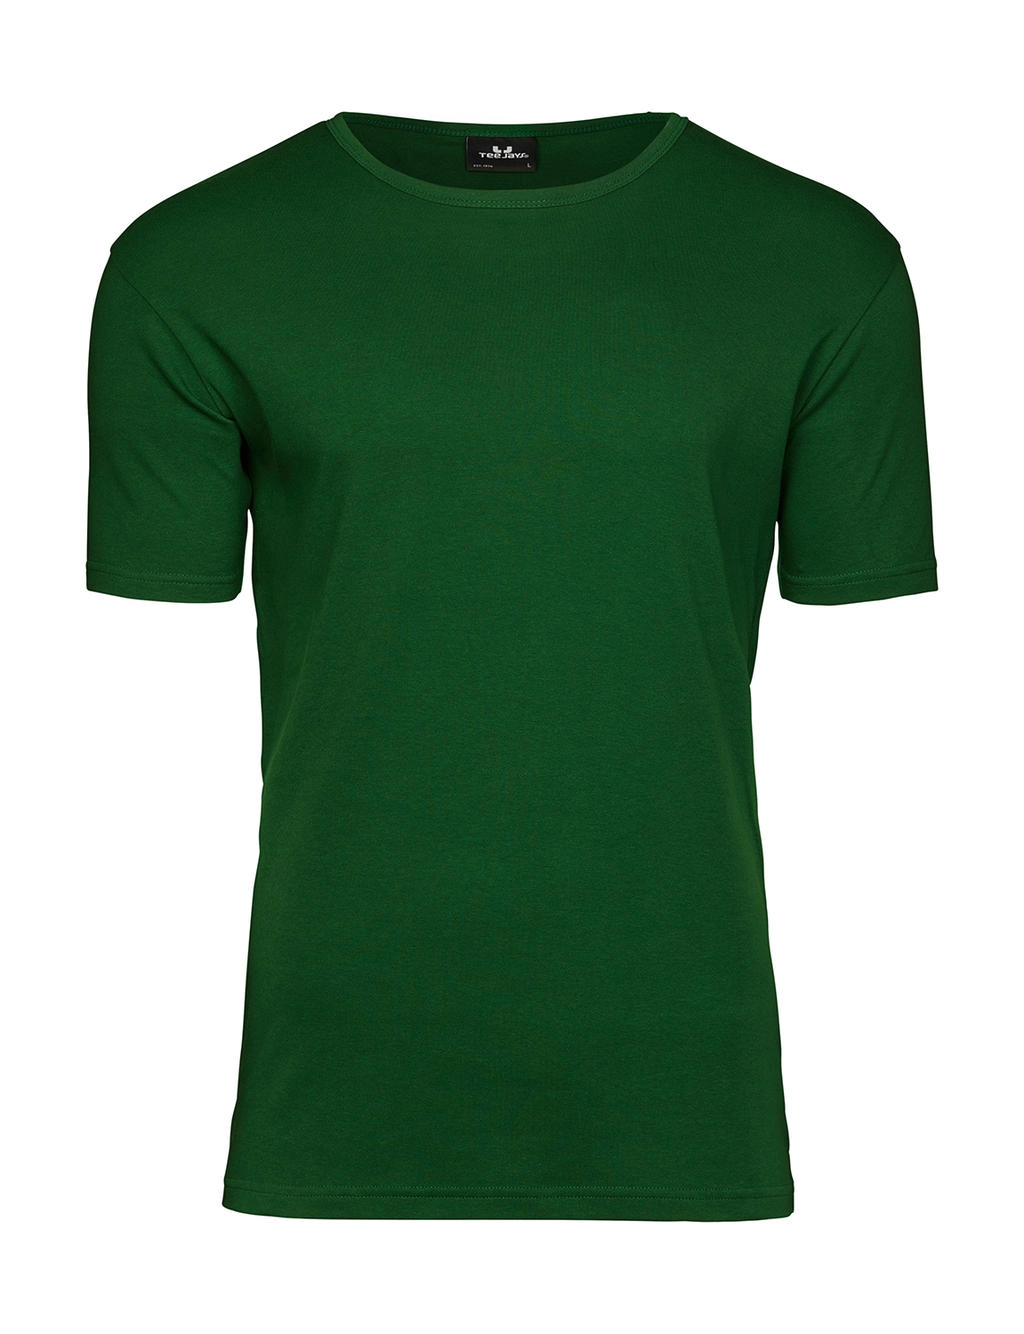 Men`s Interlock T-Shirt zum Besticken und Bedrucken in der Farbe Forest Green mit Ihren Logo, Schriftzug oder Motiv.